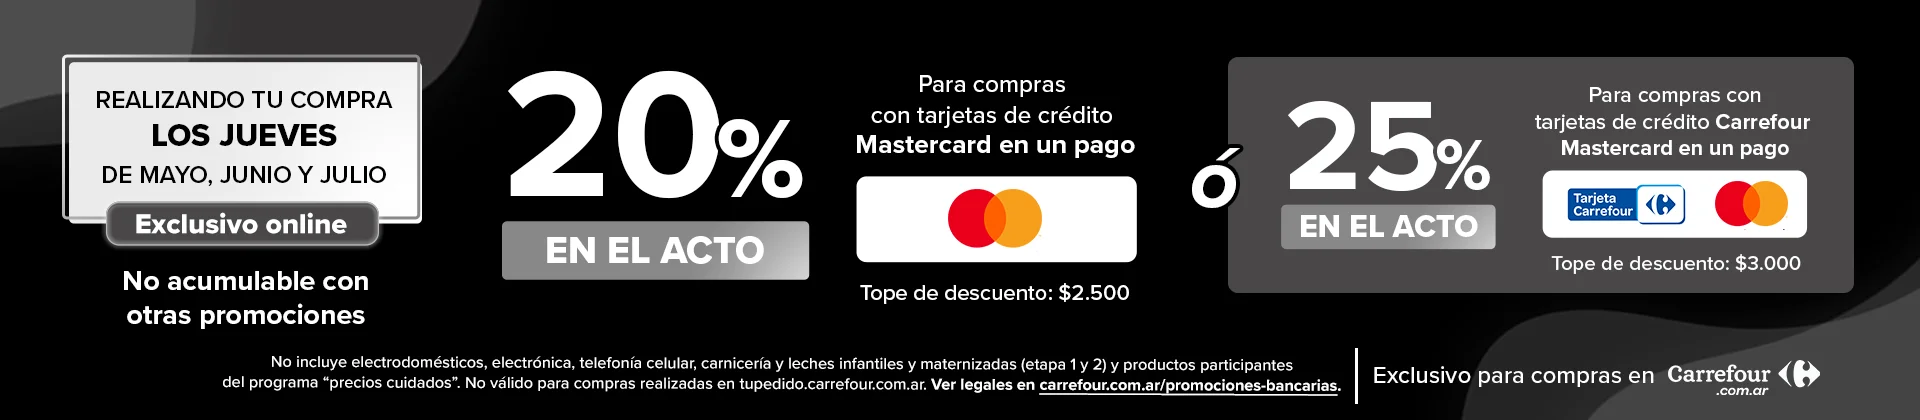 20% de descuento en el acto pagando con tarjetas de crédito Mastercard en un pago o 25% de descuento en el acto pagando con tarjeta de crédito Carrefour Mastercard